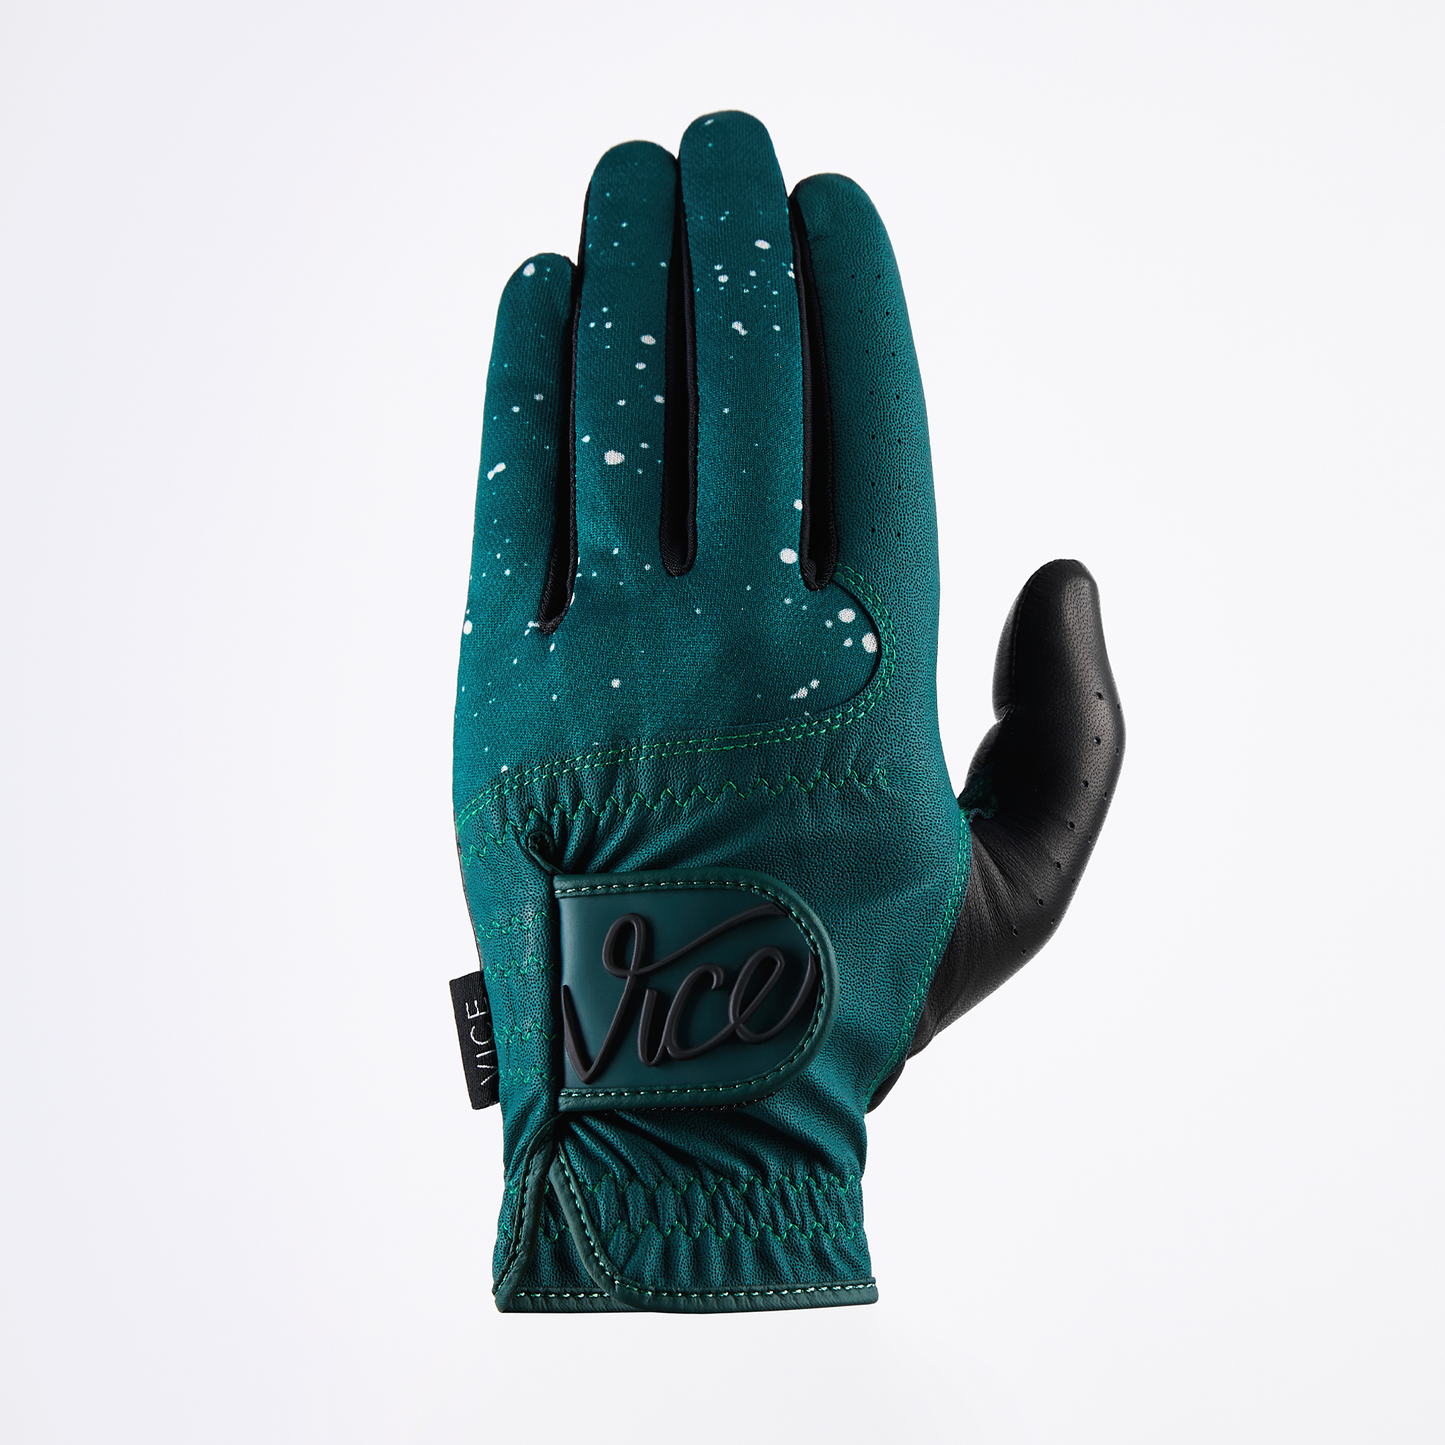 Vice Duro Color Glove